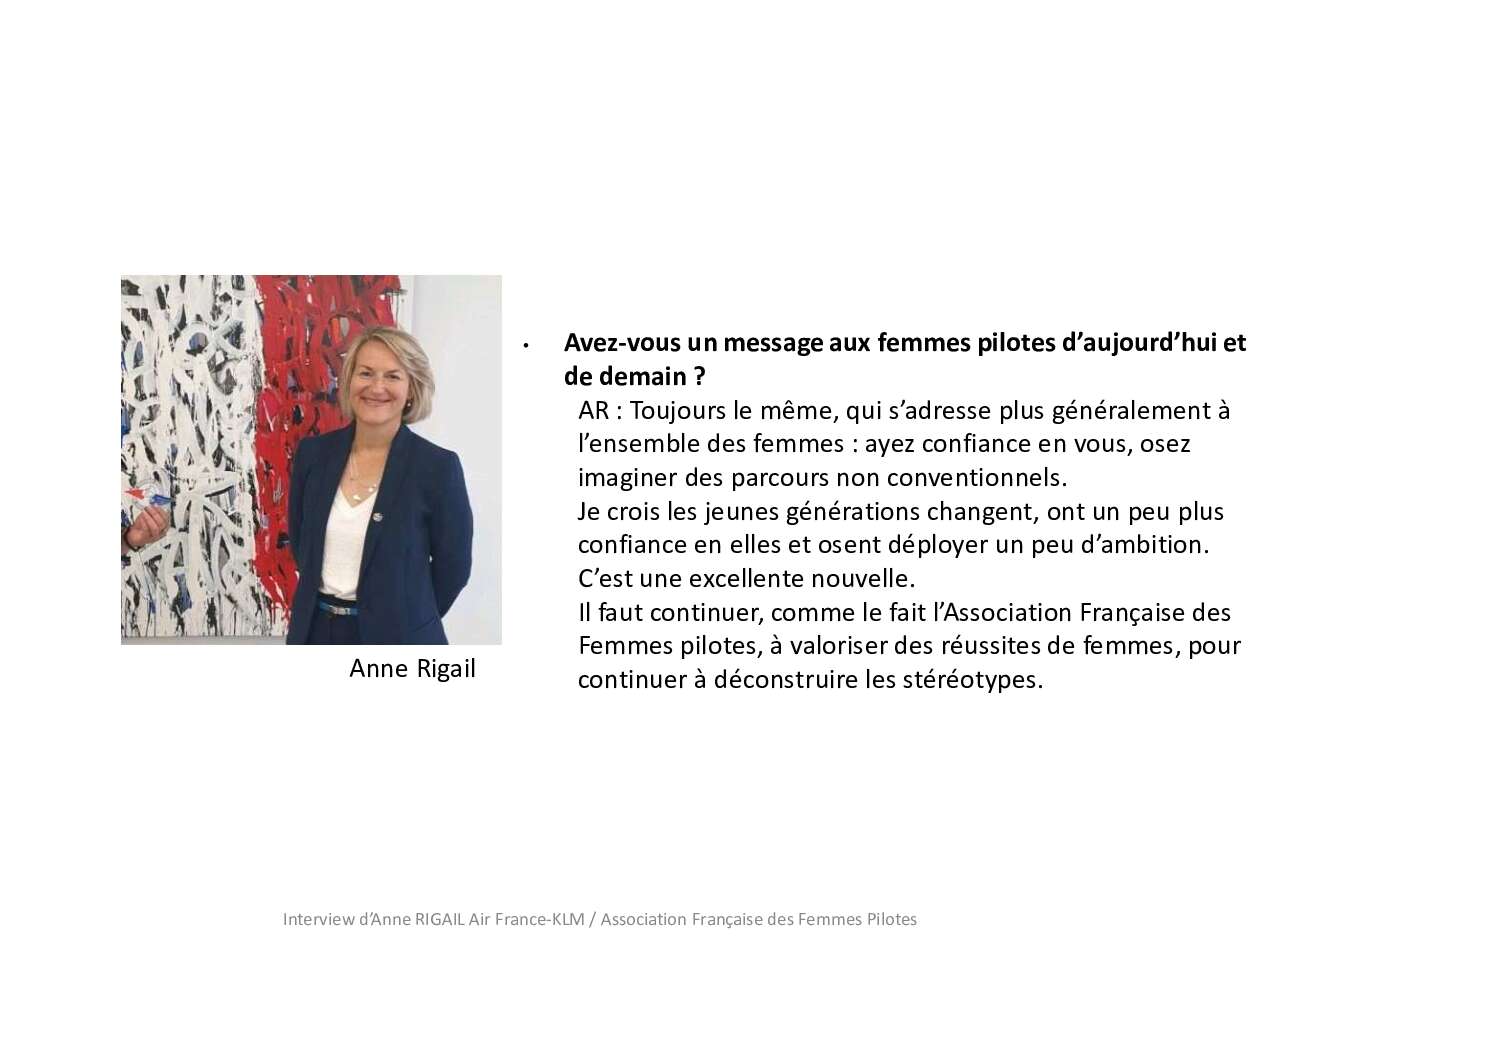 Interview Anne Rigail Air France Association Francaise des Femmes Pilotes